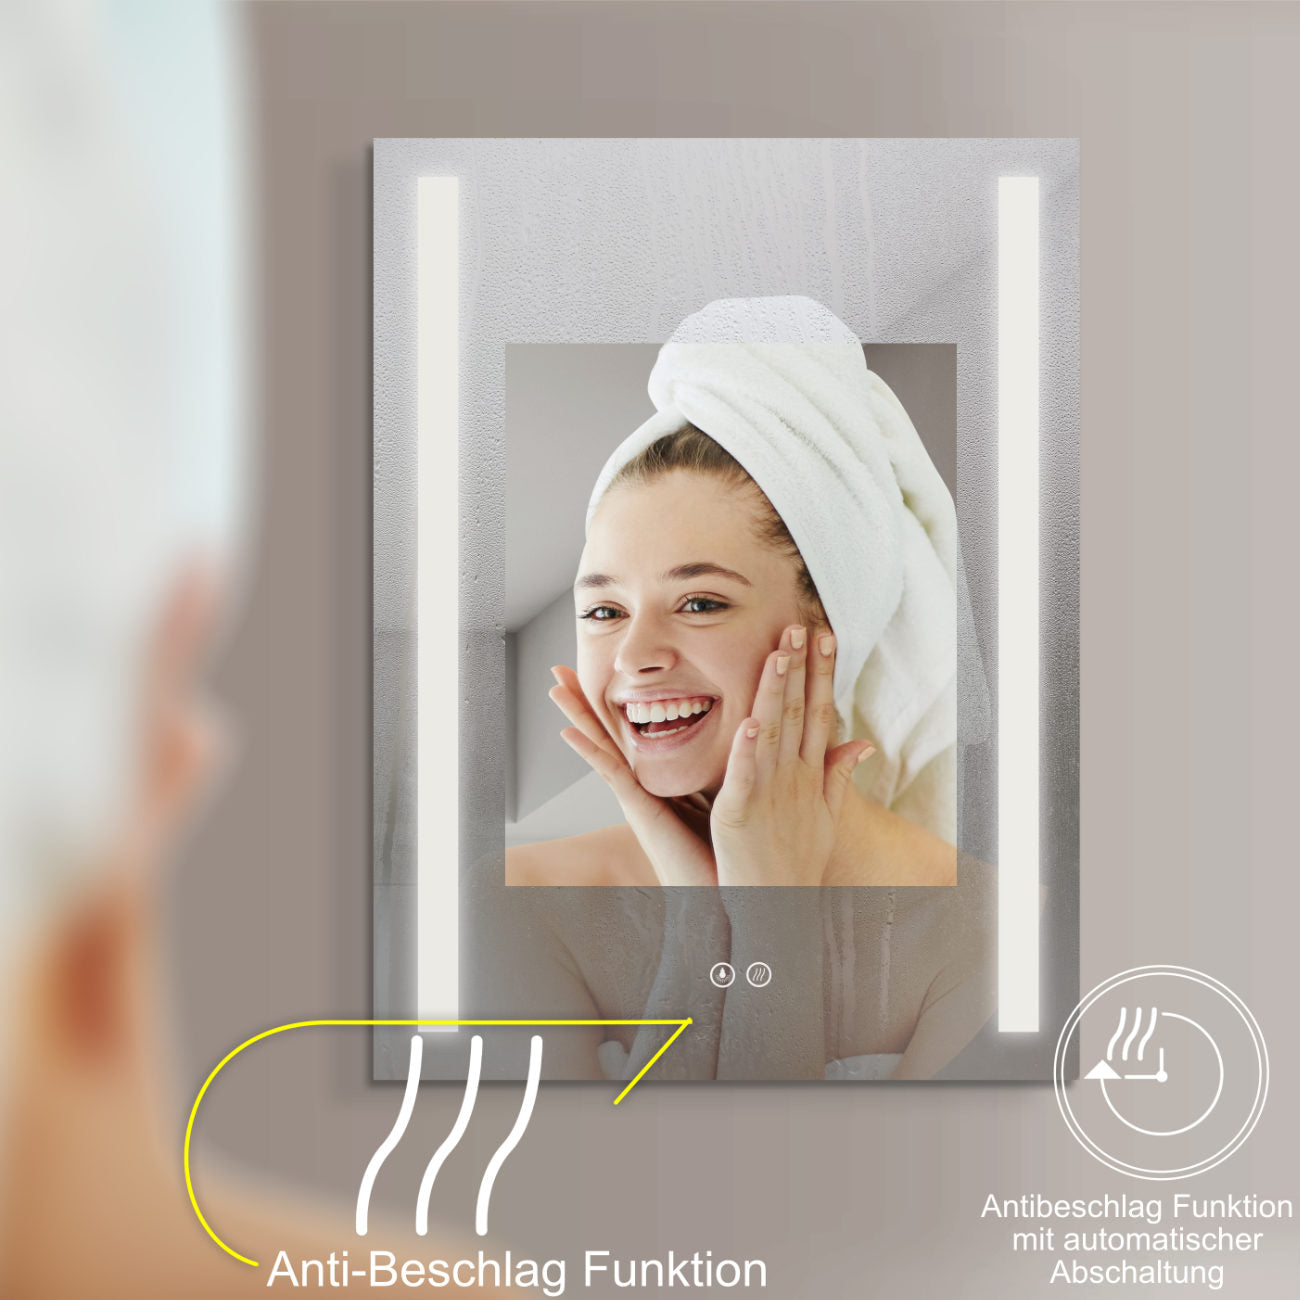 LED Badspiegel, Design-Badspiegel mit LED-Beleuchtung und Antibeschlag-Funktion 